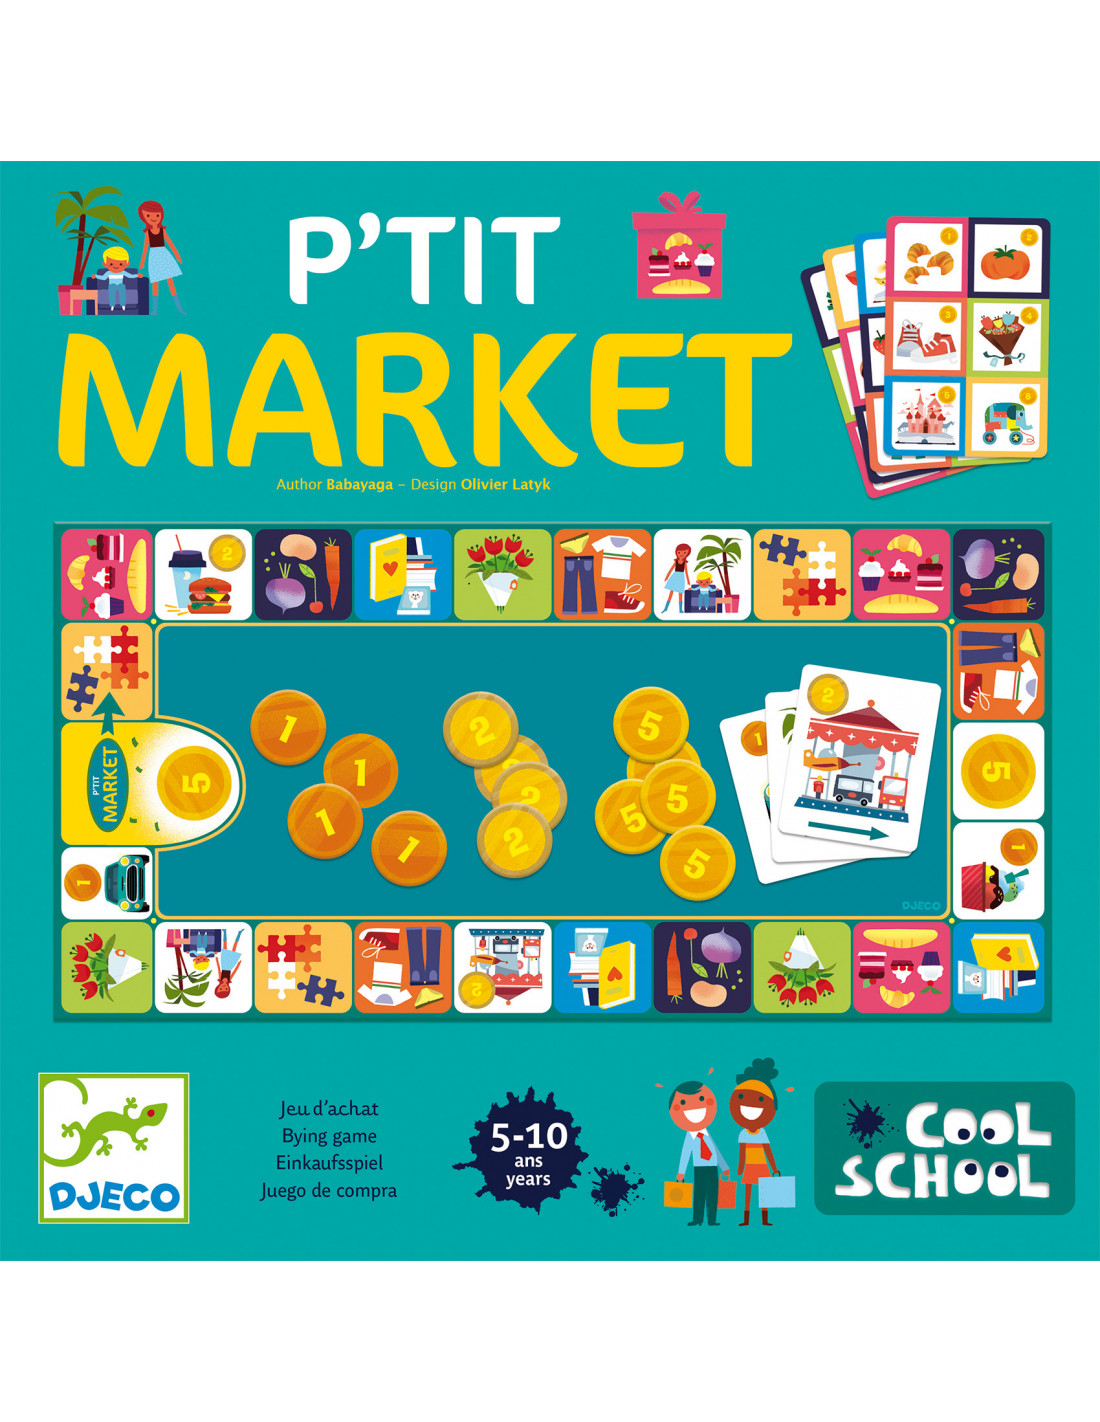 P’tit Market